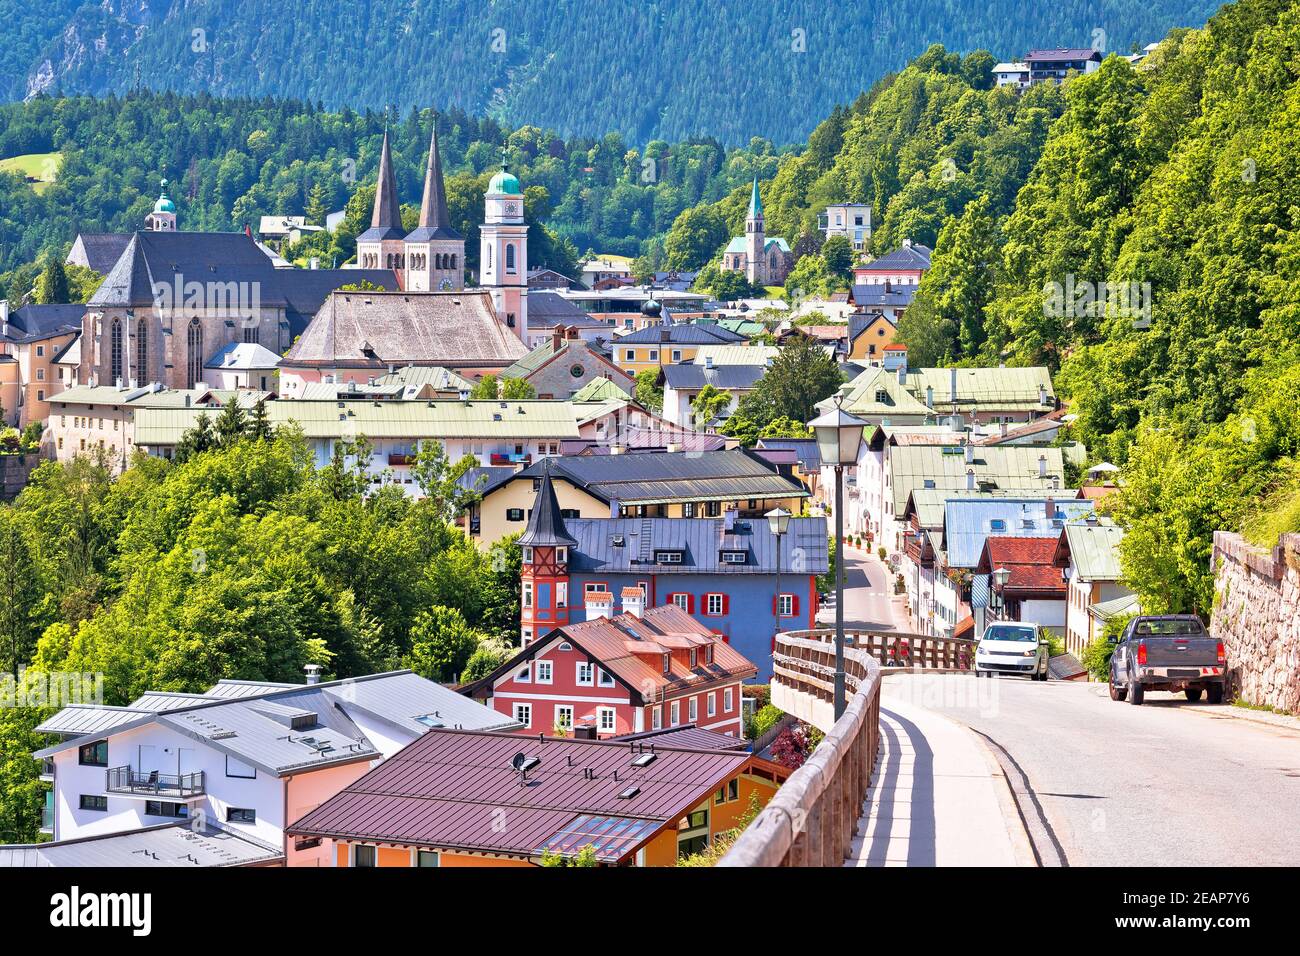 Vue sur la ville de Berchtesgaden et le paysage alpin Banque D'Images